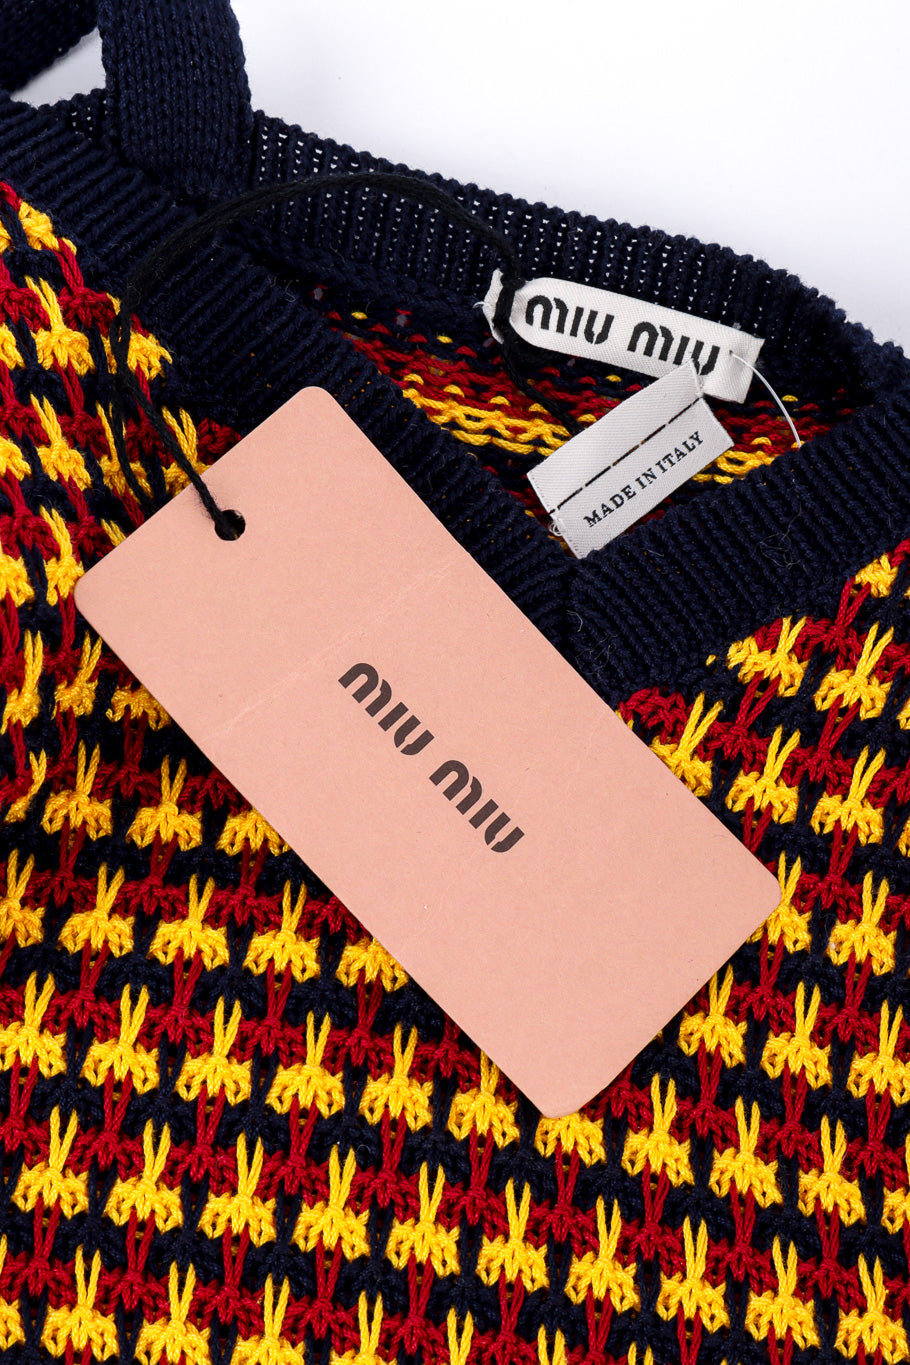 Miu Miu Scissor Knit Tank Dress signature label and tag closeup @Recessla